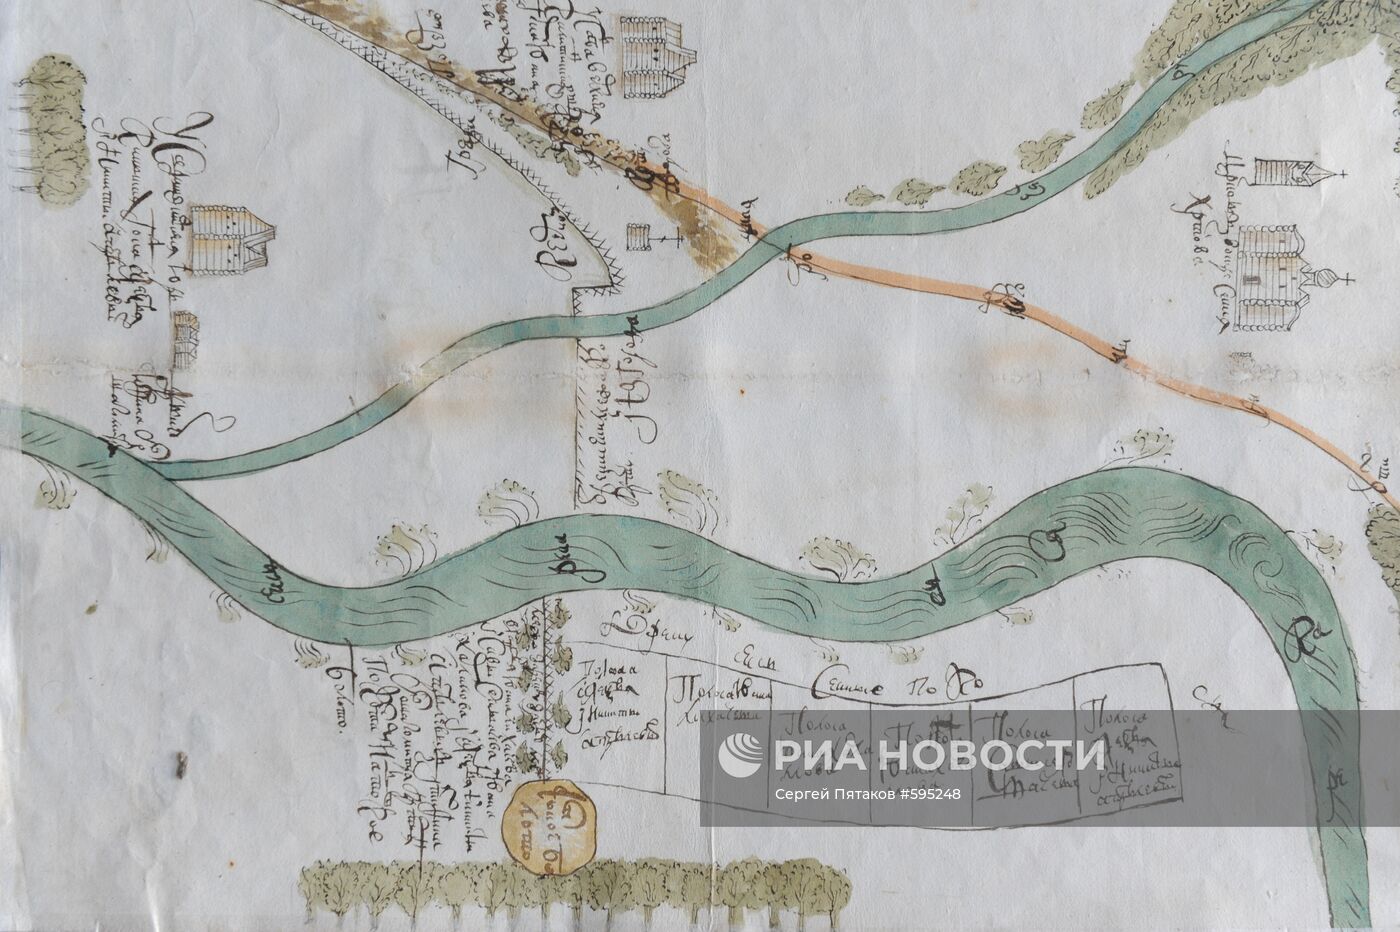 Чертеж населенного пункта Новгородского уезда XVI века